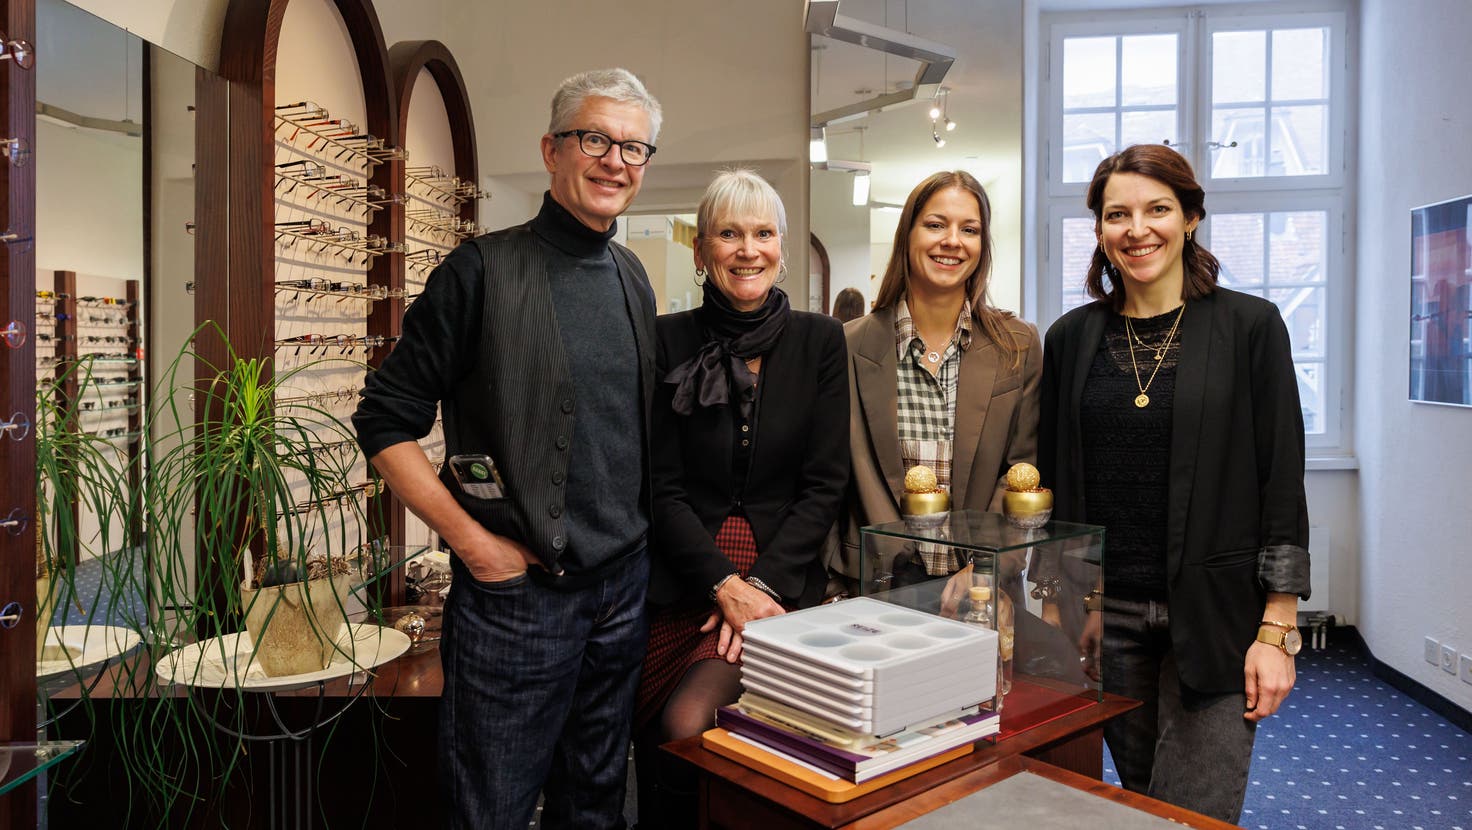 Optiker Aeschimann wird nach 22 Jahren in jüngere Hände gegeben (von links): Mark Aeschimann, Madlaina Aeschimann, Linda Mertz und Janine Grütter. (Bild: Hanspeter Bärtschi)